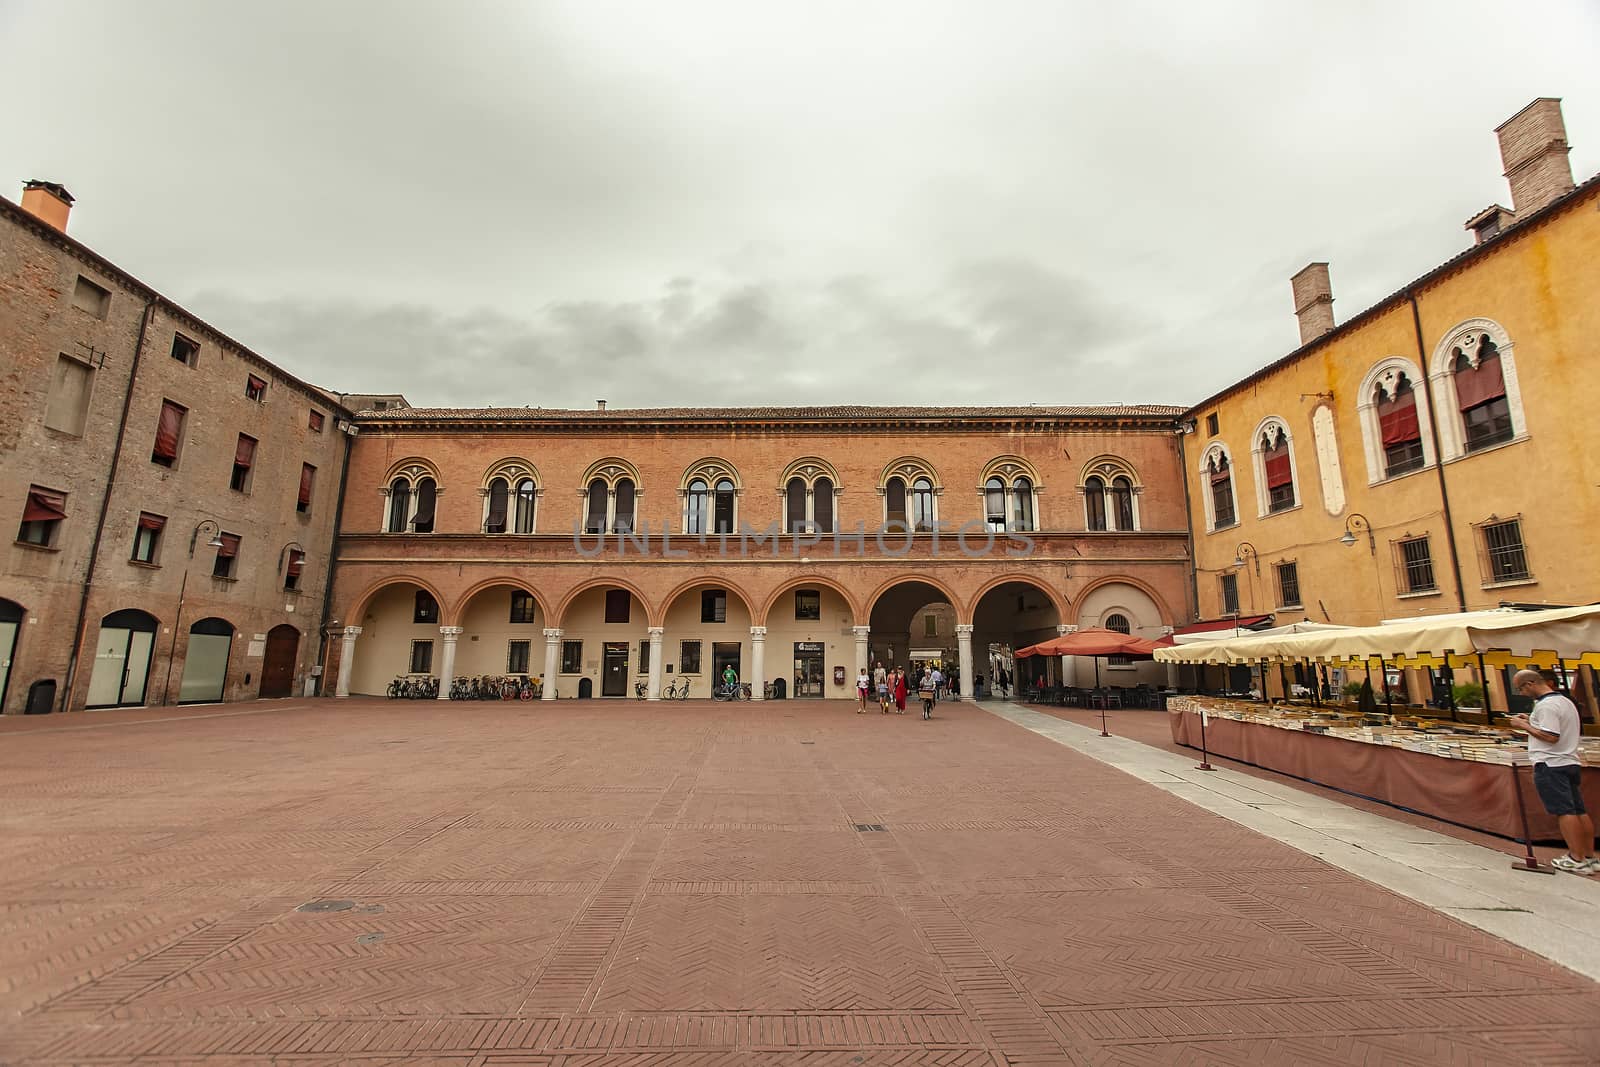 Piazza municipale in Ferrara by pippocarlot